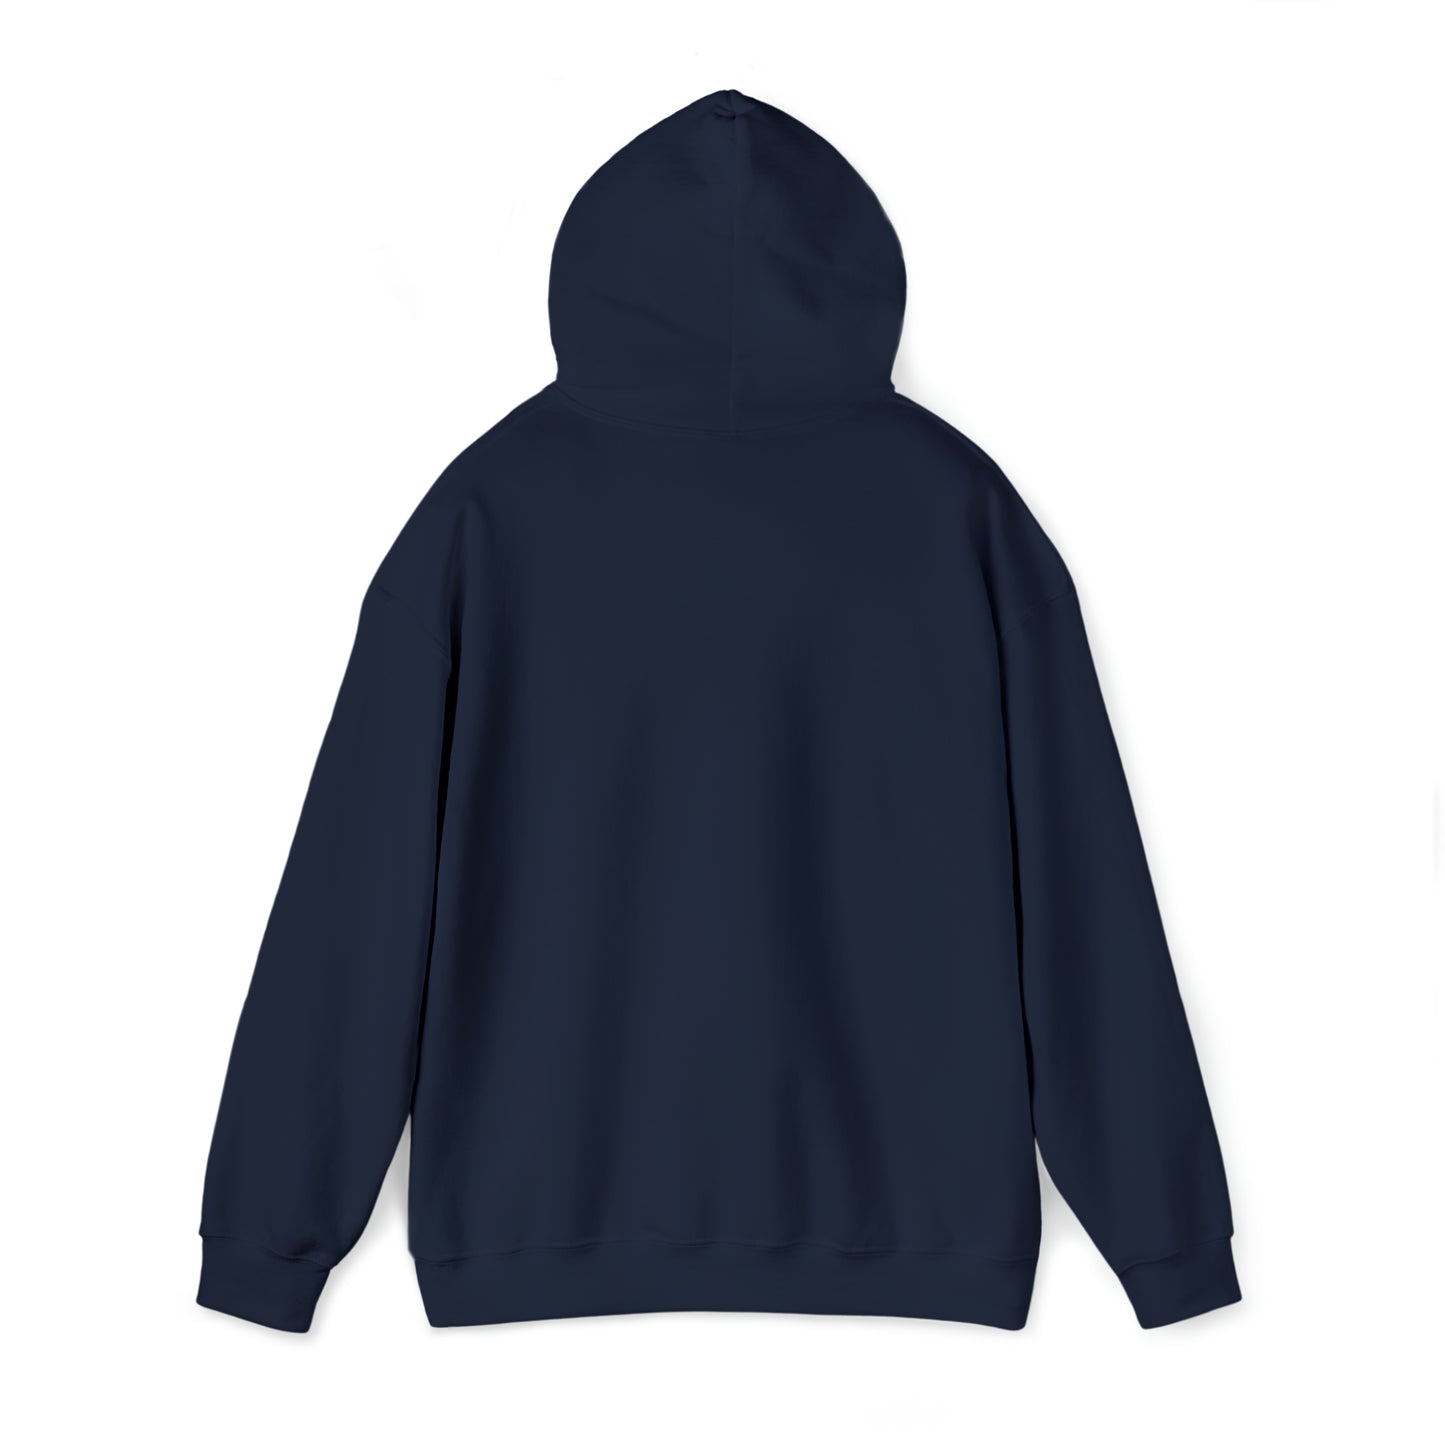 Centennial - Men's Heavy Blend Hooded Sweatshirt - Class Of 2023